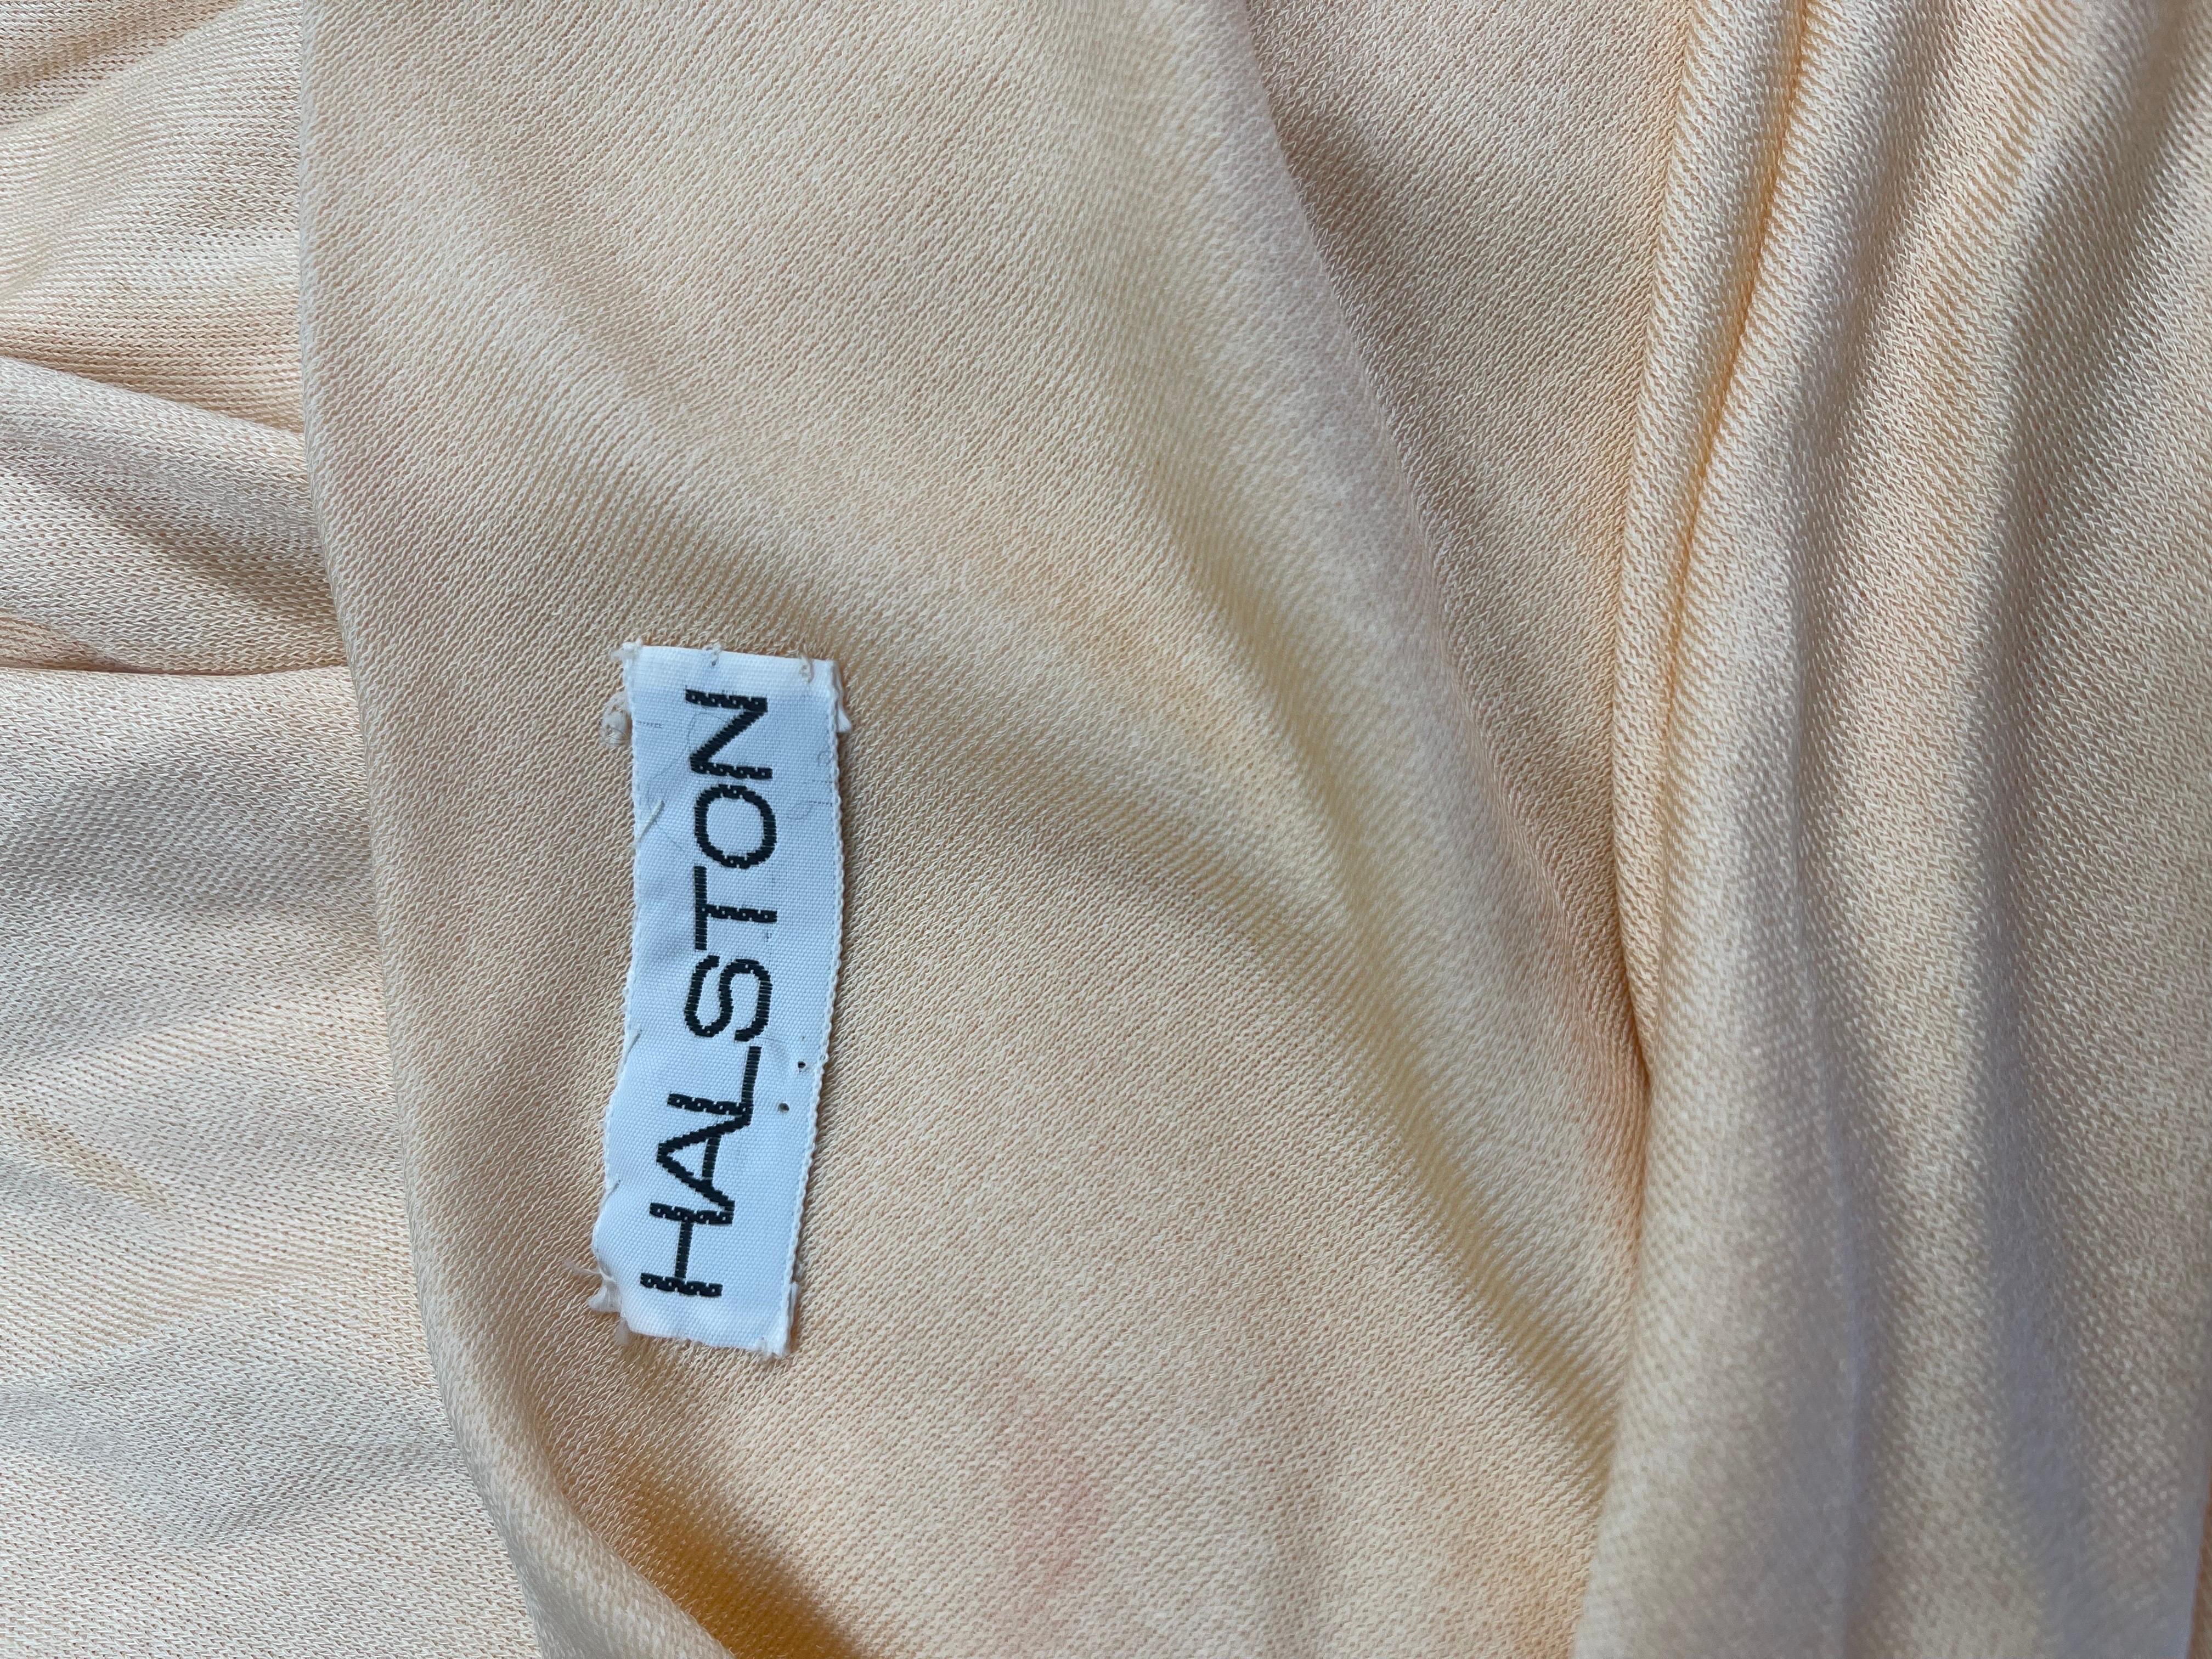 Schönes 1970er HALSTON schräg geschnittenes Kleid aus Seidenjersey! Die perfekte champagnerfarbene / buttercremefarbene / weiche gelbe Farbe ist ideal für jede Jahreszeit. Sie lässt sich einfach über den Kopf schieben und lässt sich biegen, um in